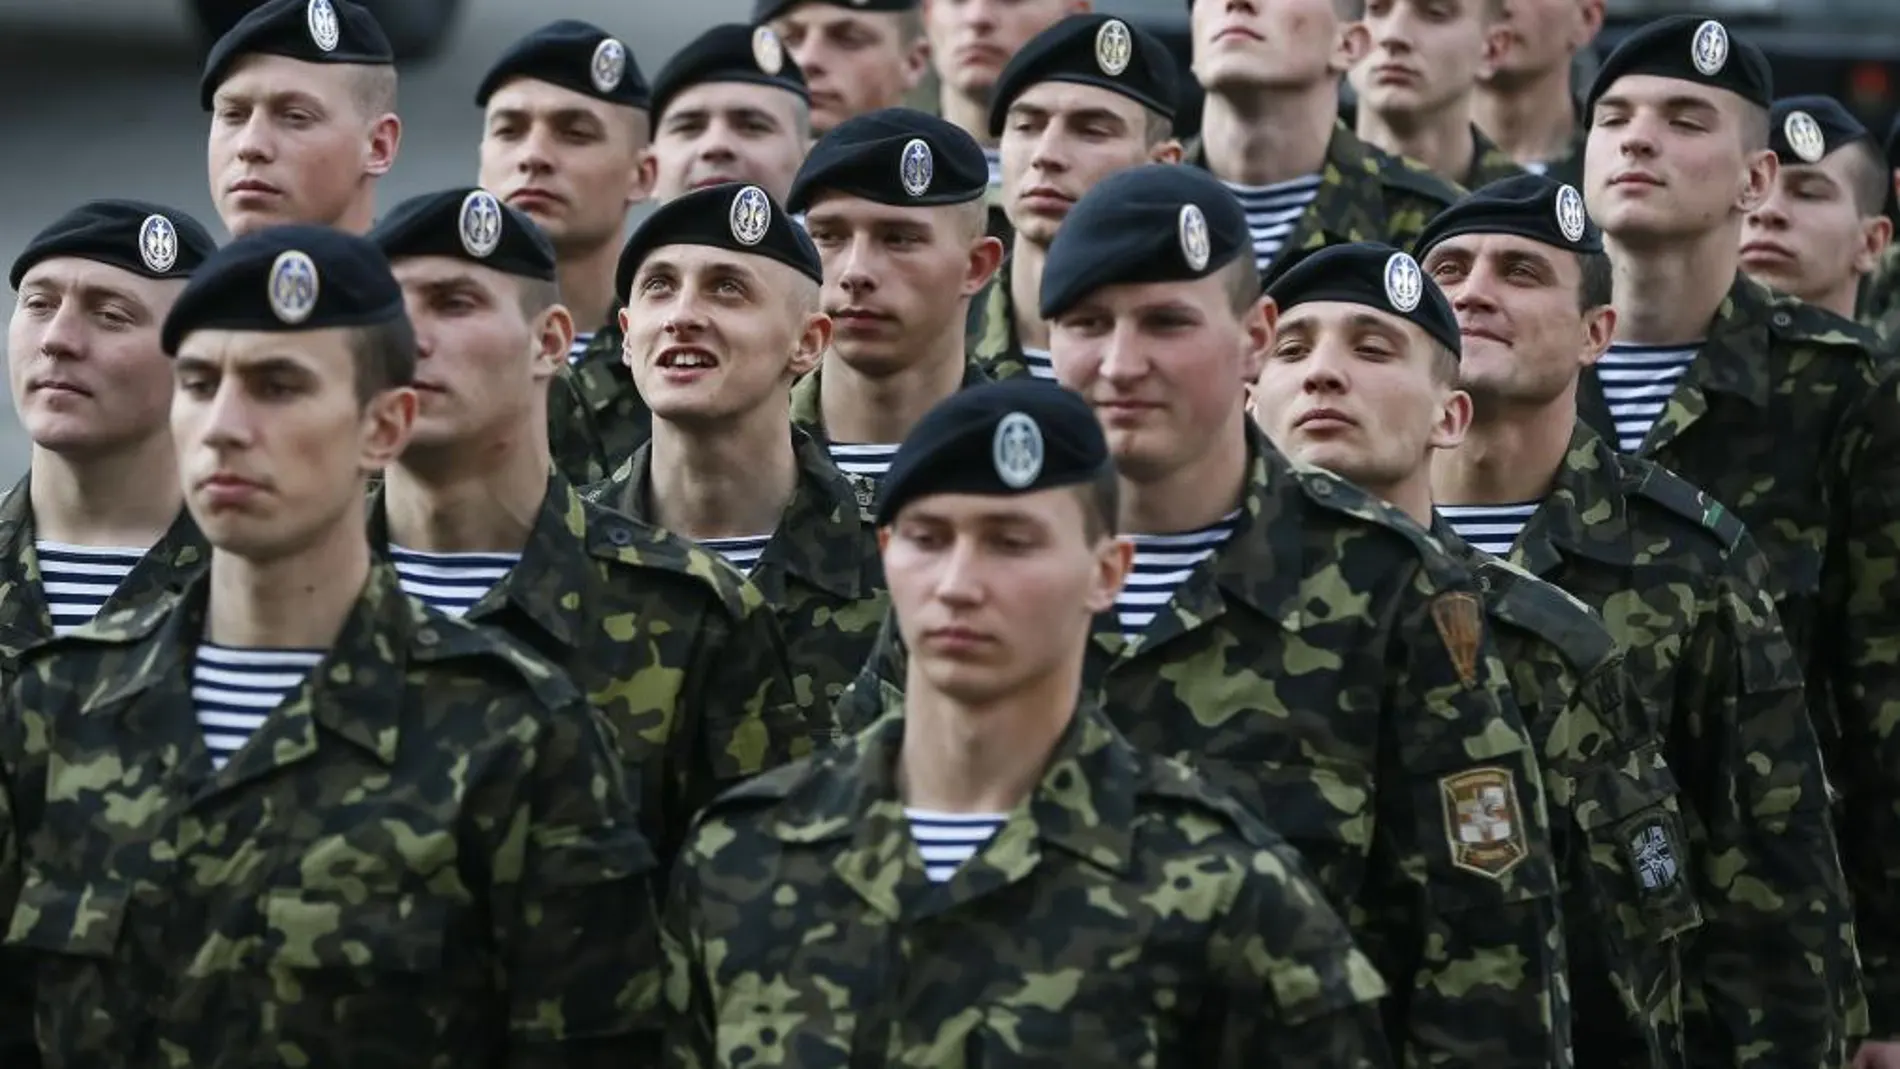 Soldados de la Armada ucraniana llegados desde la base de Crimea, durante la ceremonia de bienvenida en Kiev